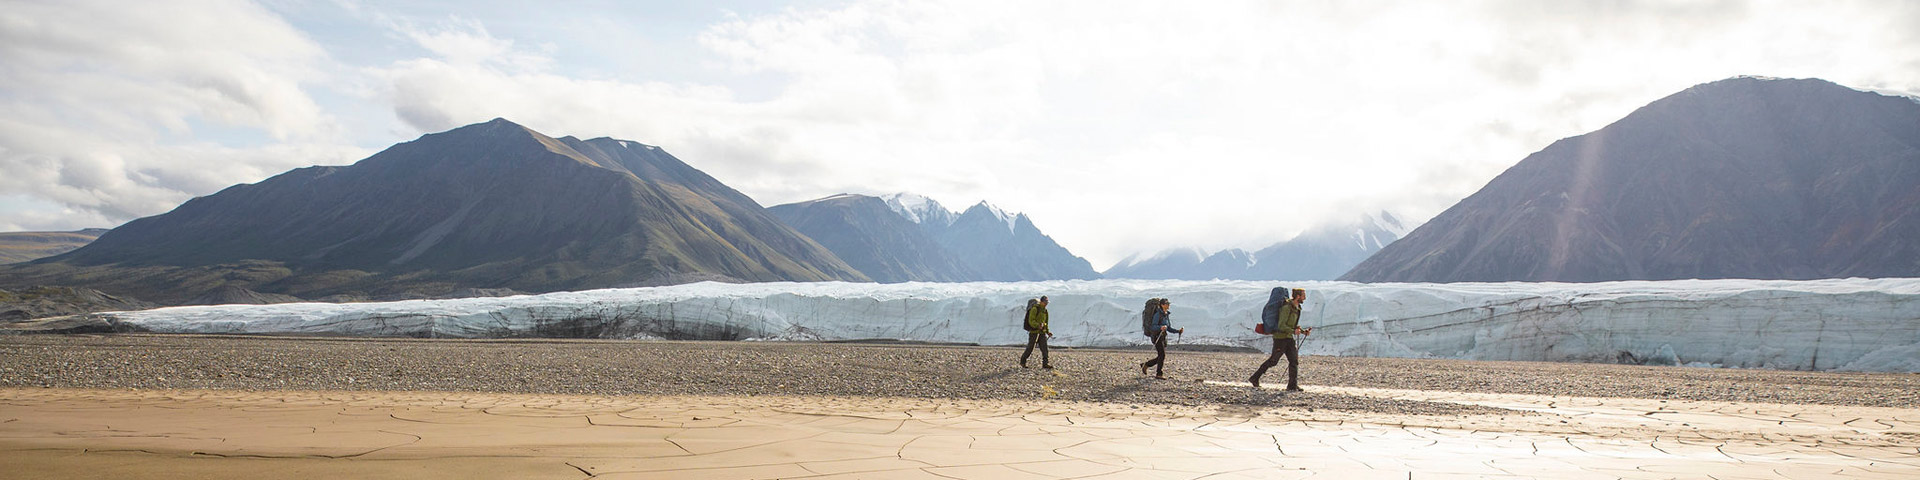 Les randonneurs marchent devant le glacier Donjek